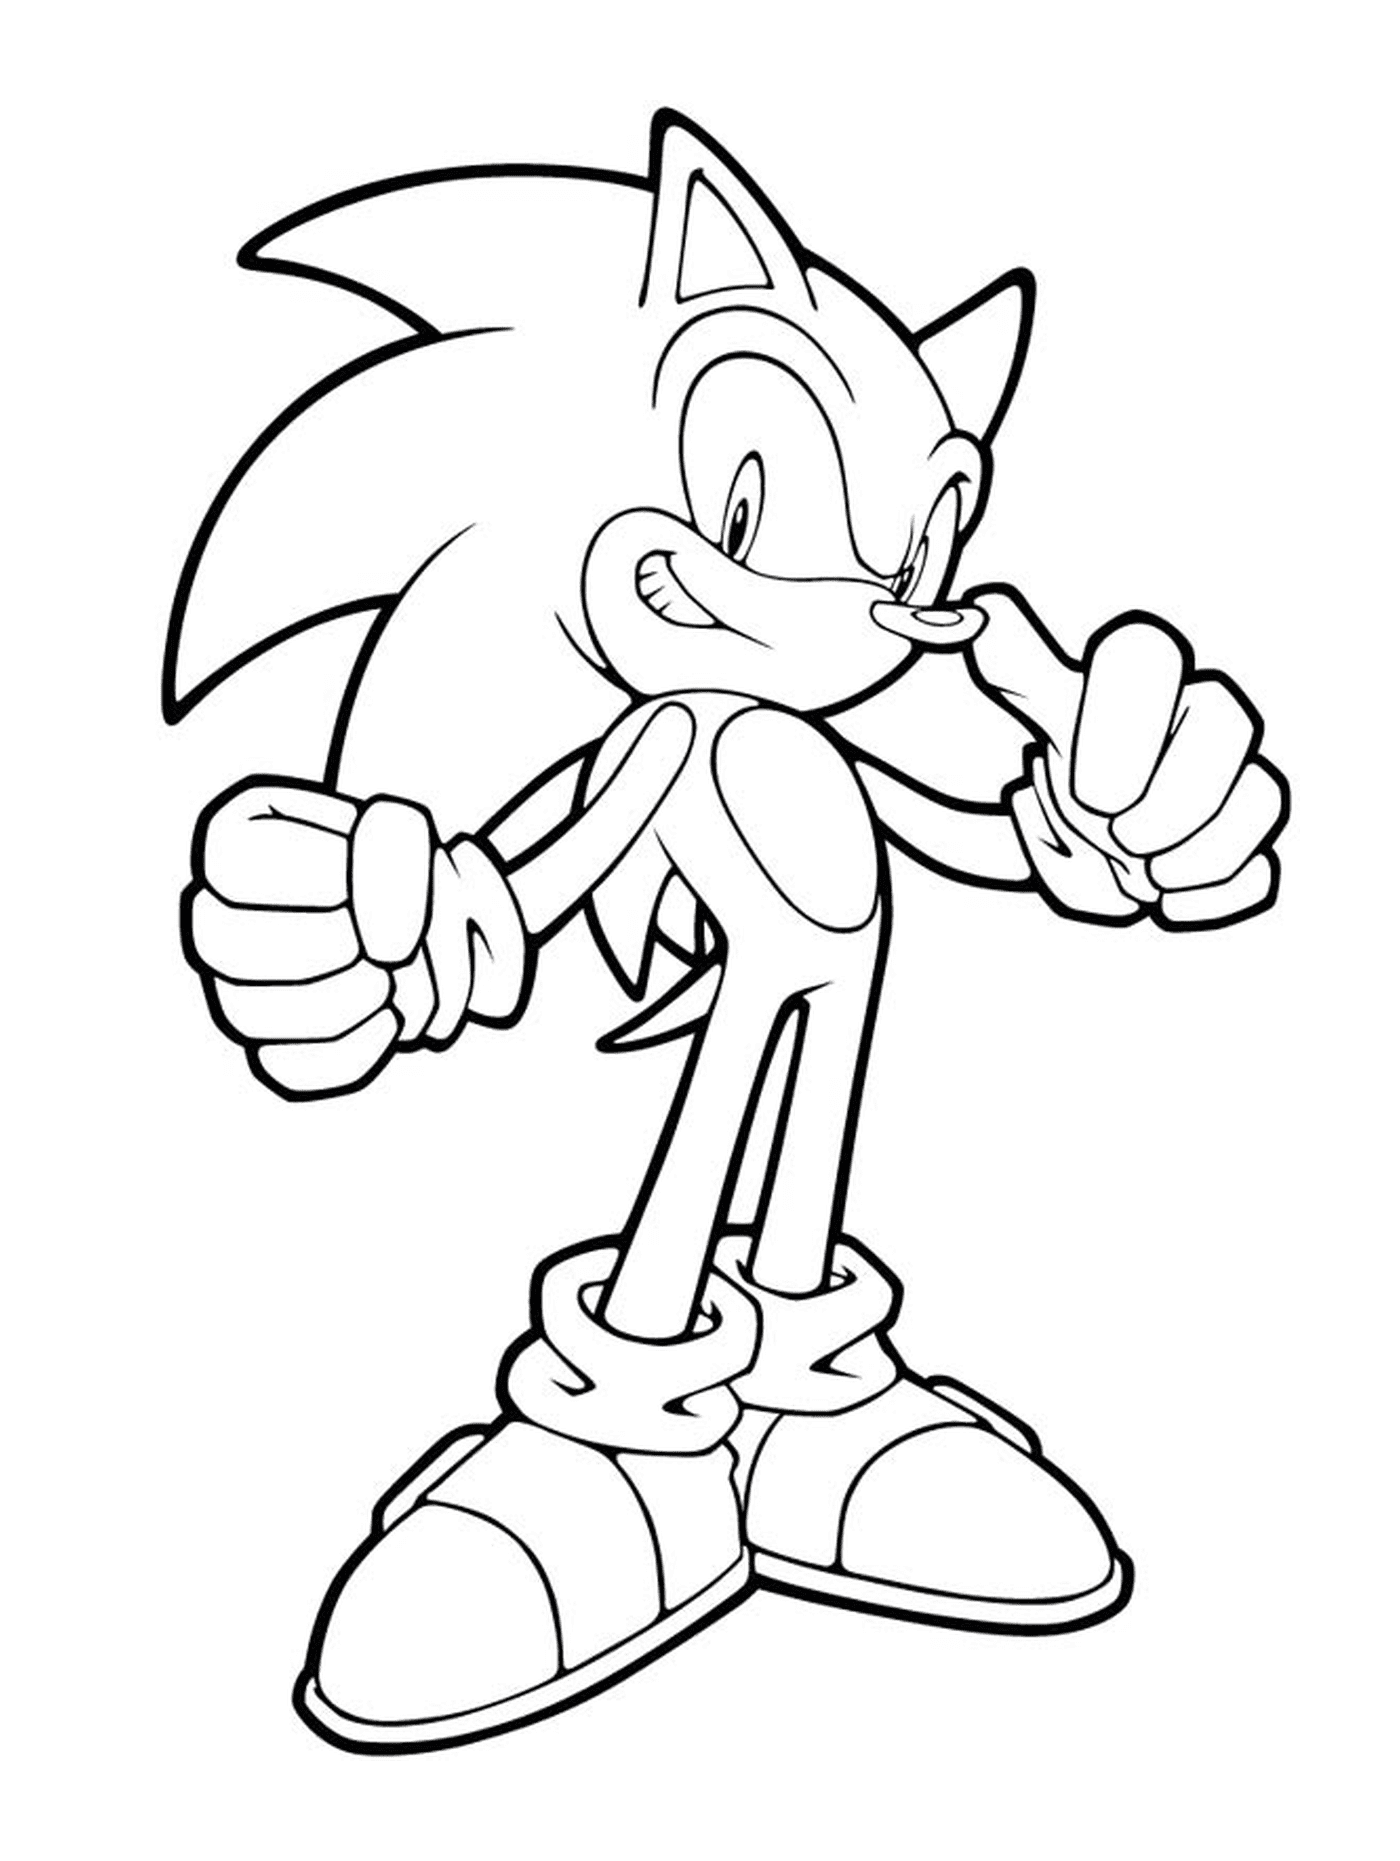  Sonic in einer kühnen Haltung 